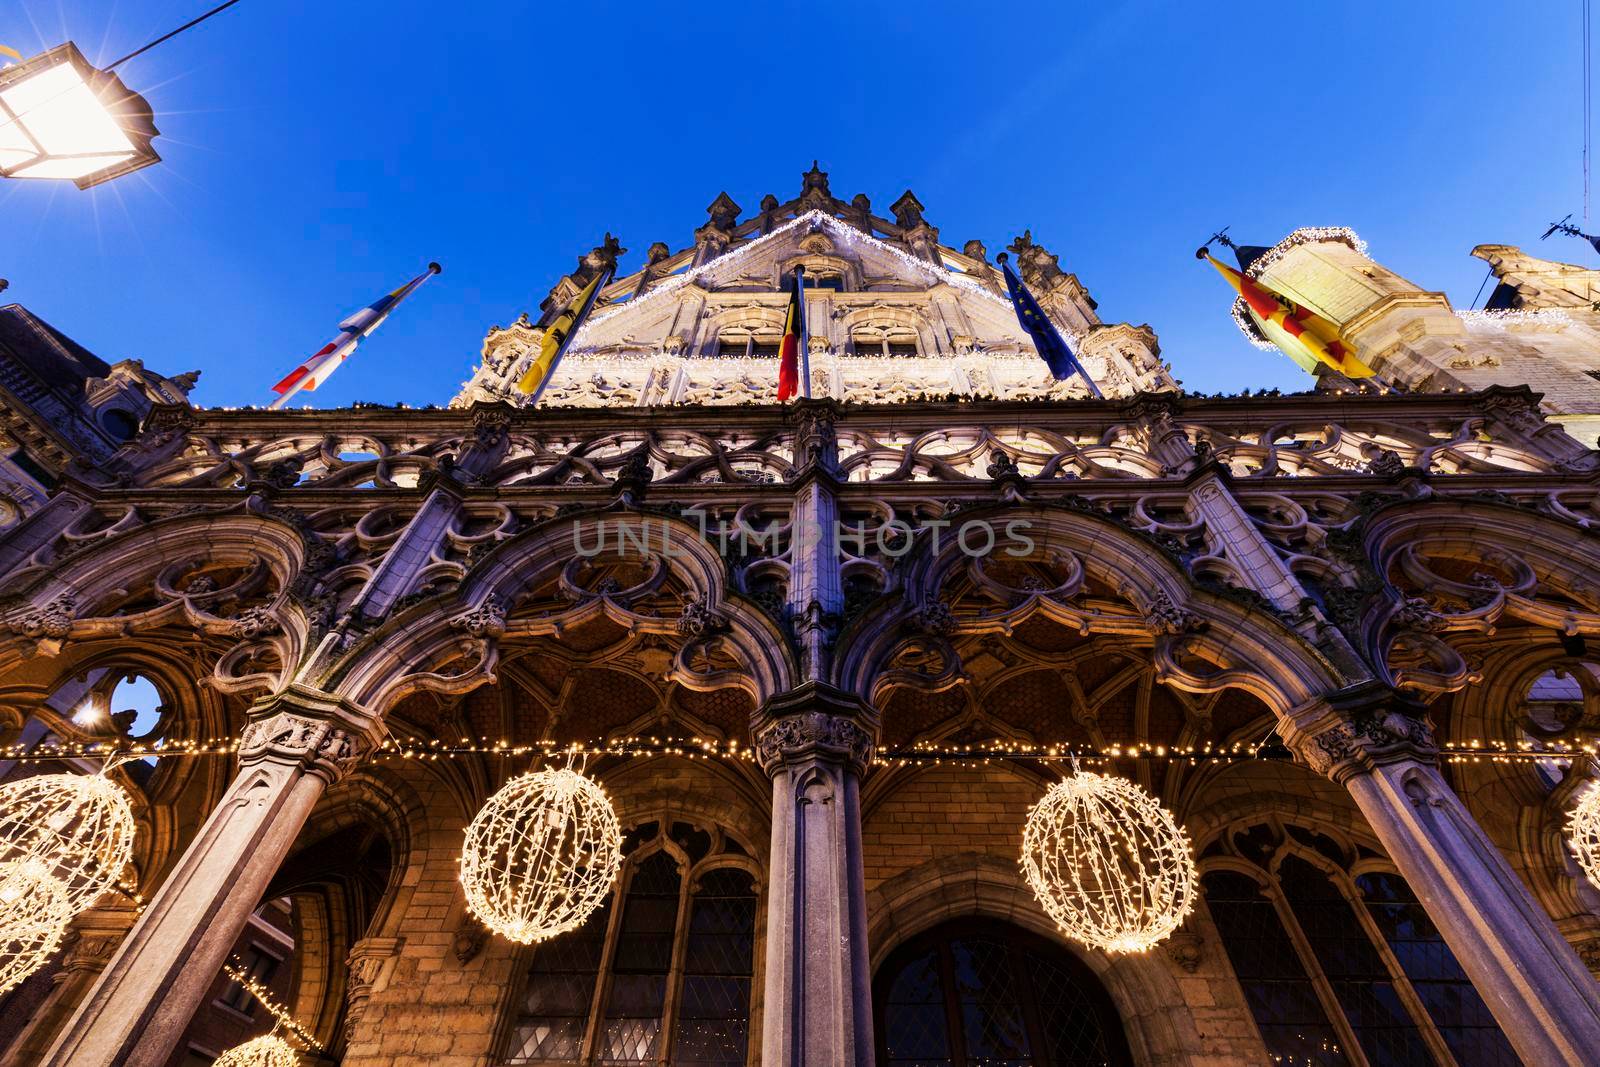 Mechelen City Hall by benkrut